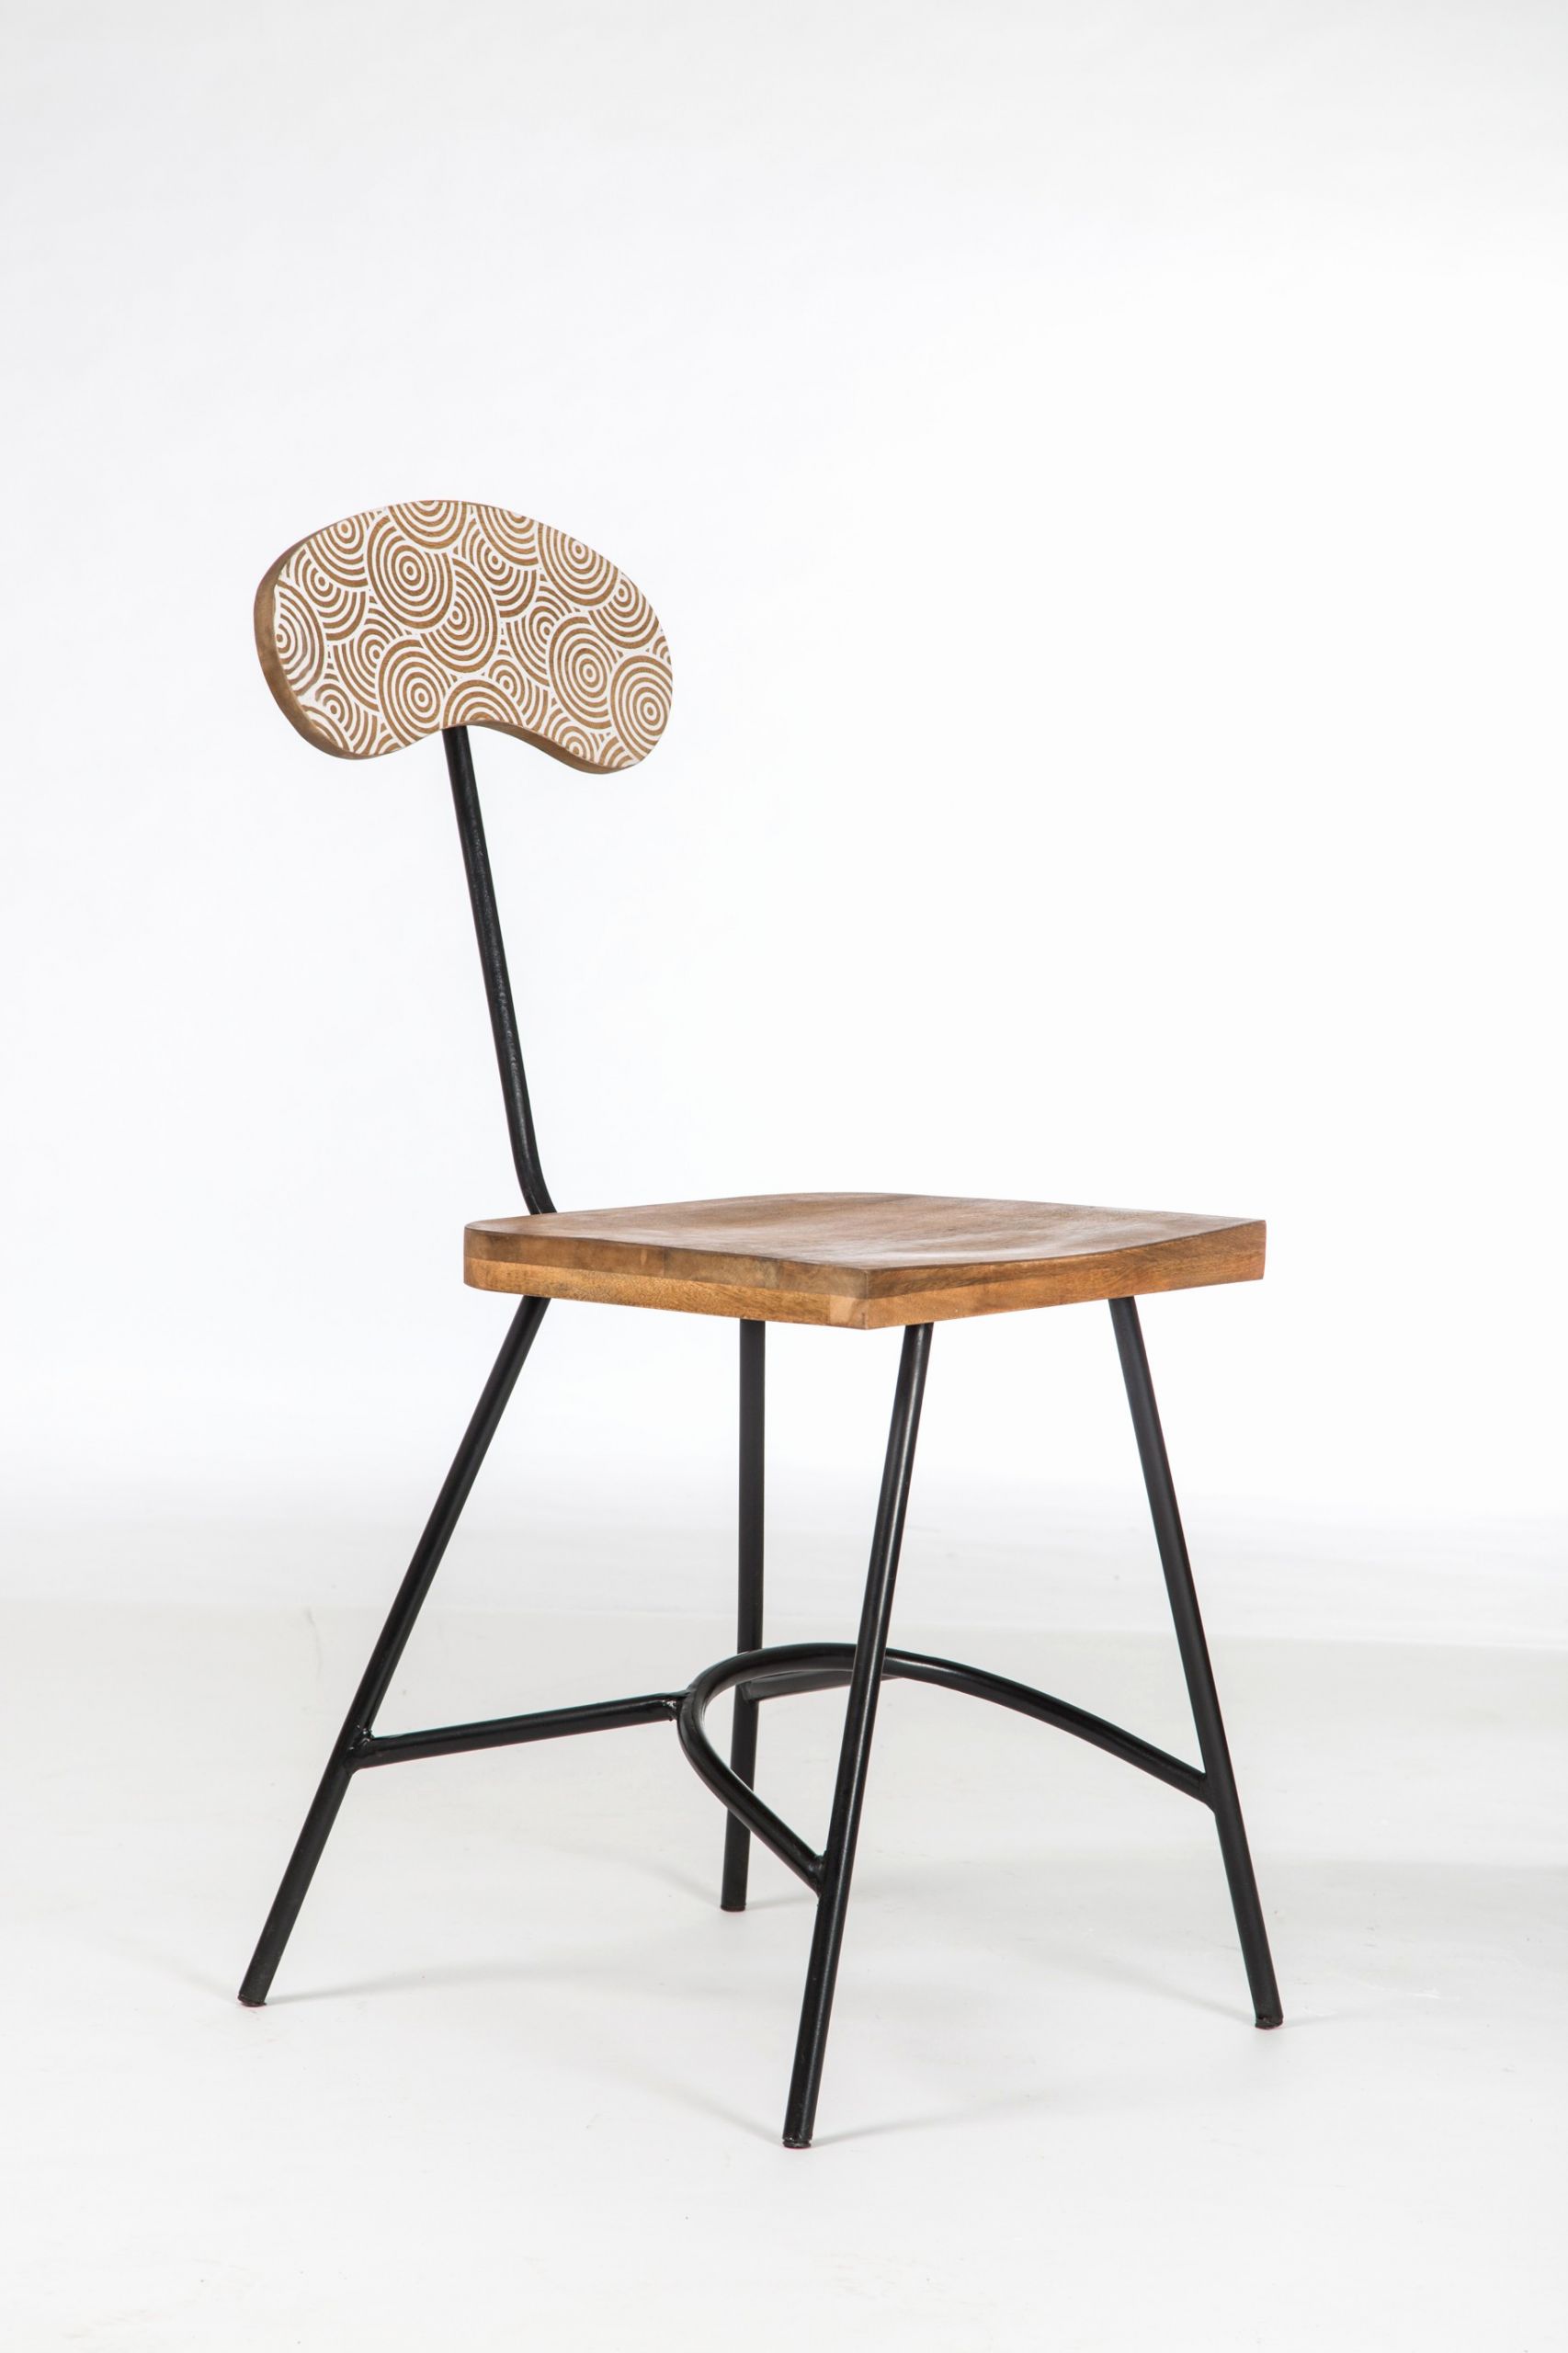 fauteuil de jardin en bois beau meuble bois et fer table de jardin rectangulaire chaise fer de fauteuil de jardin en bois scaled